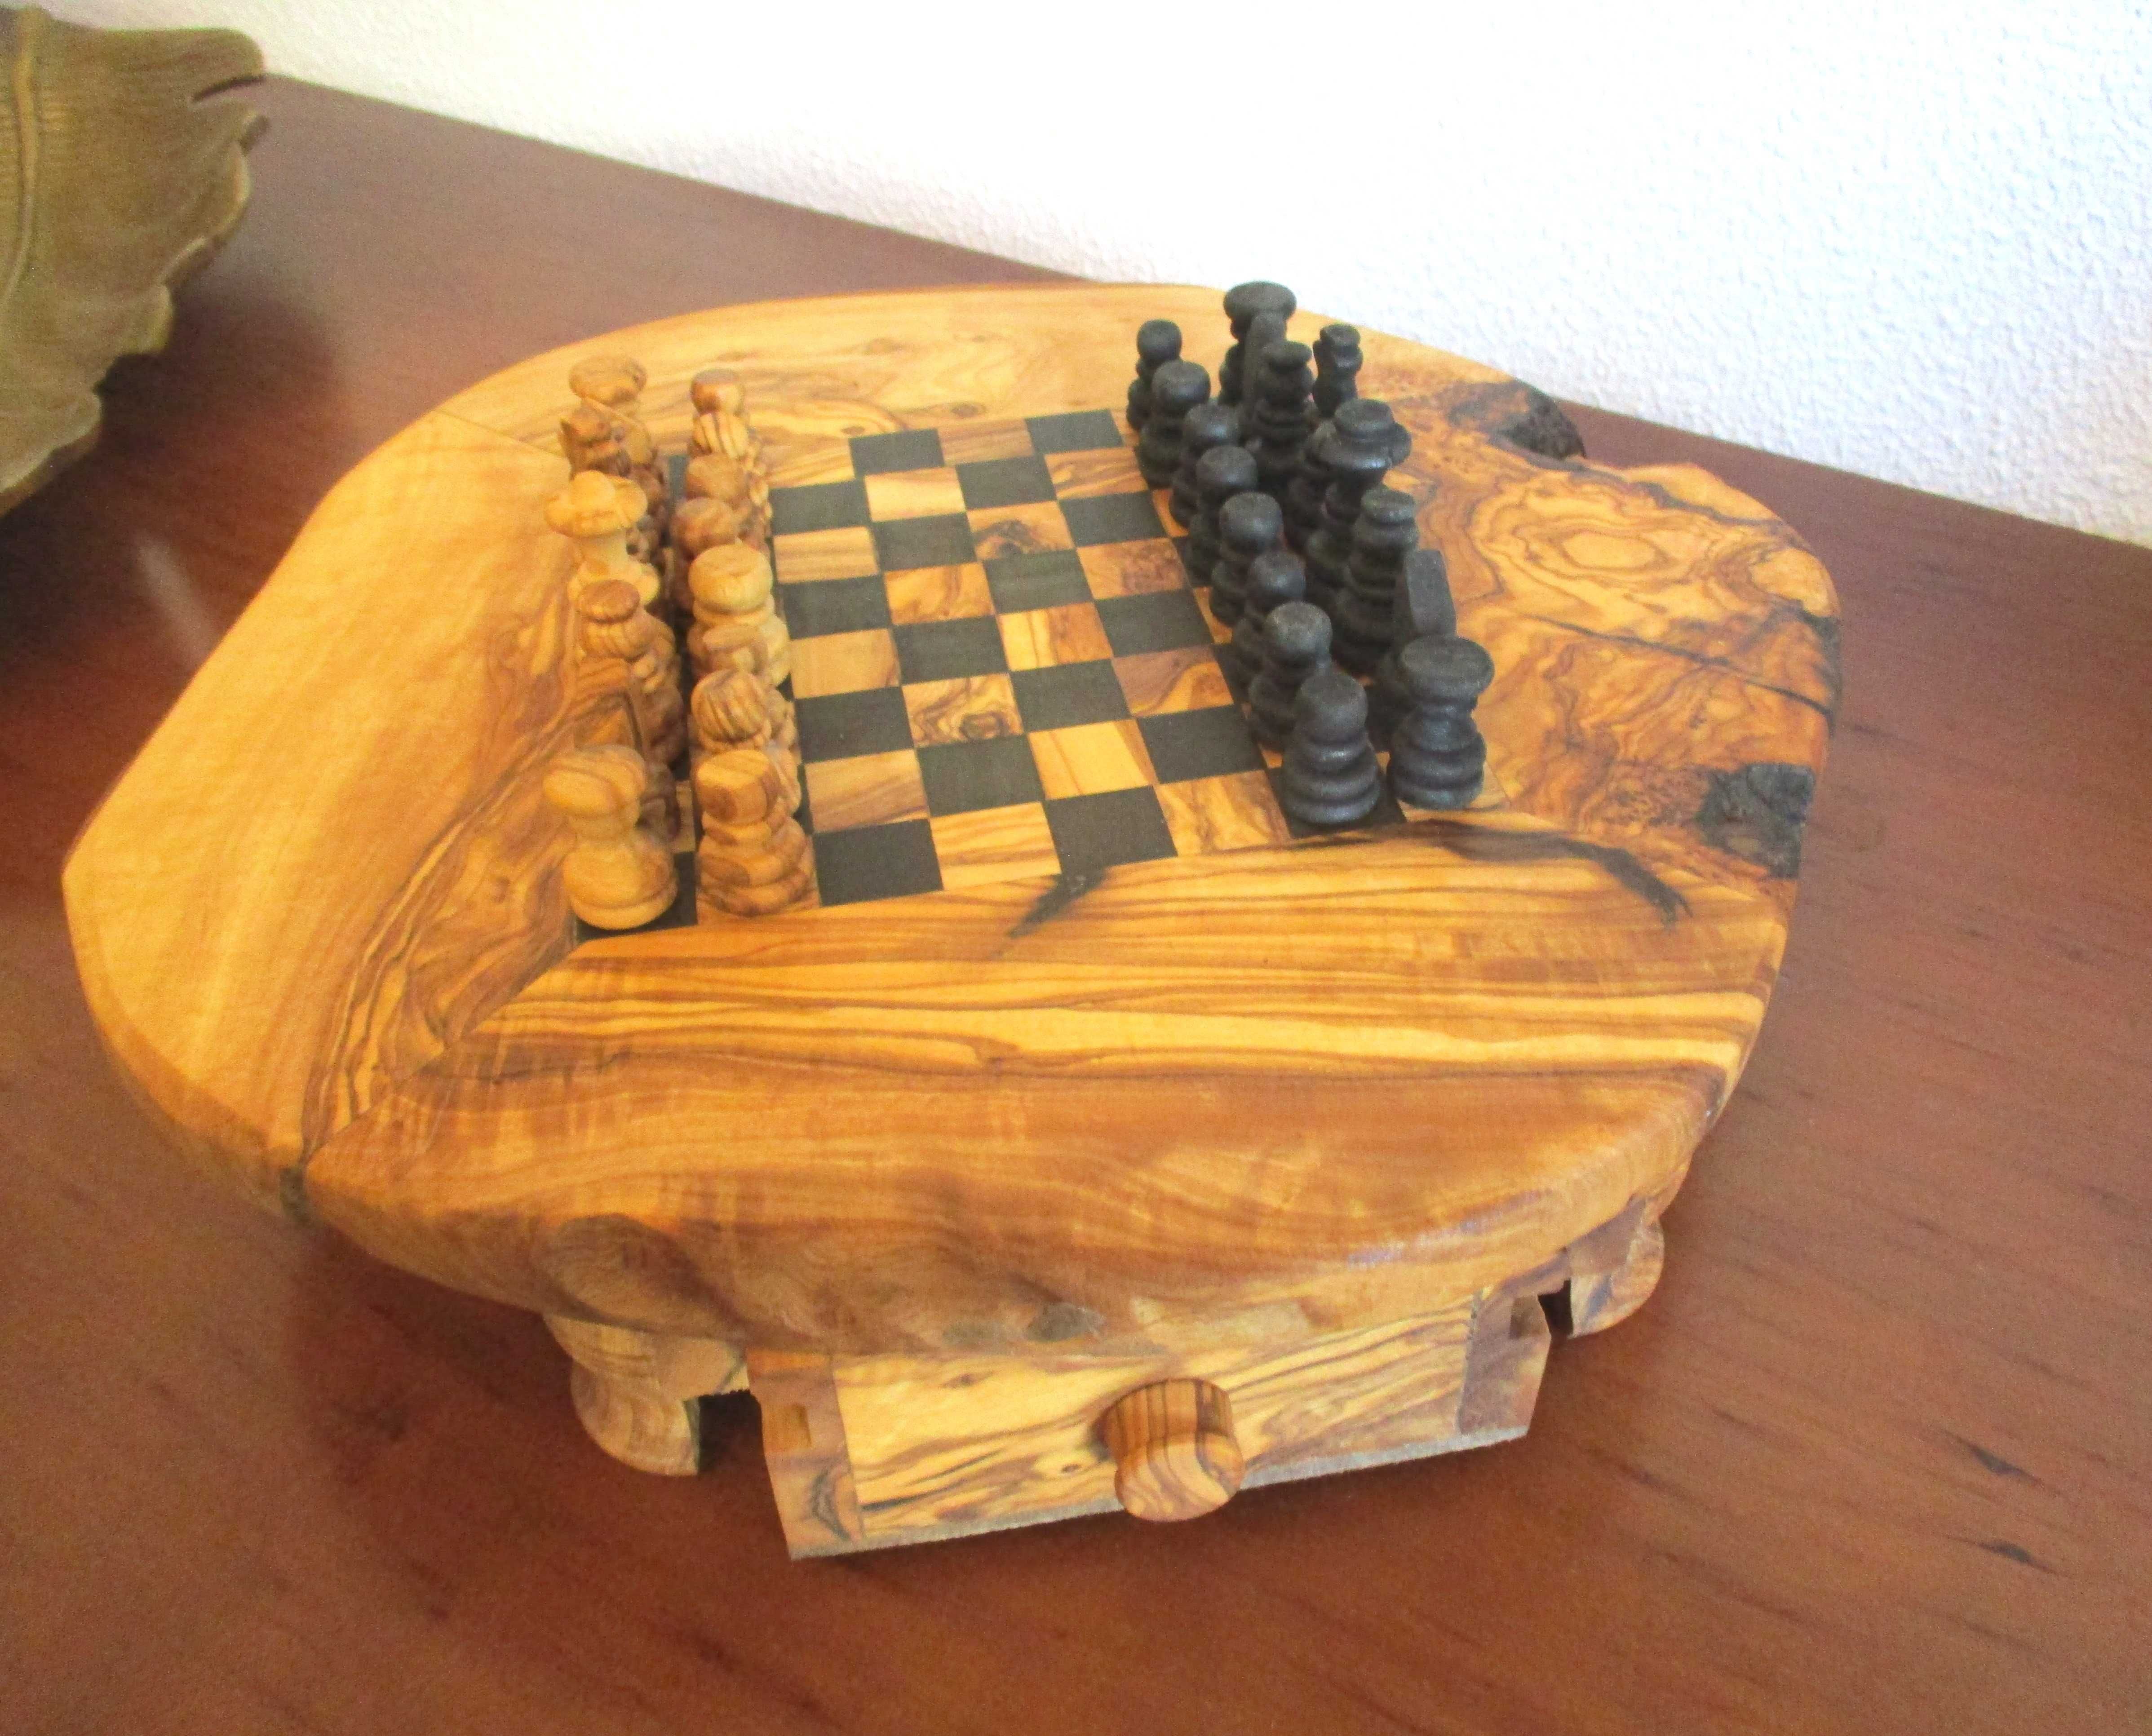 Jogo de Xadrez, artesanato espanhol São Clemente • OLX Portugal